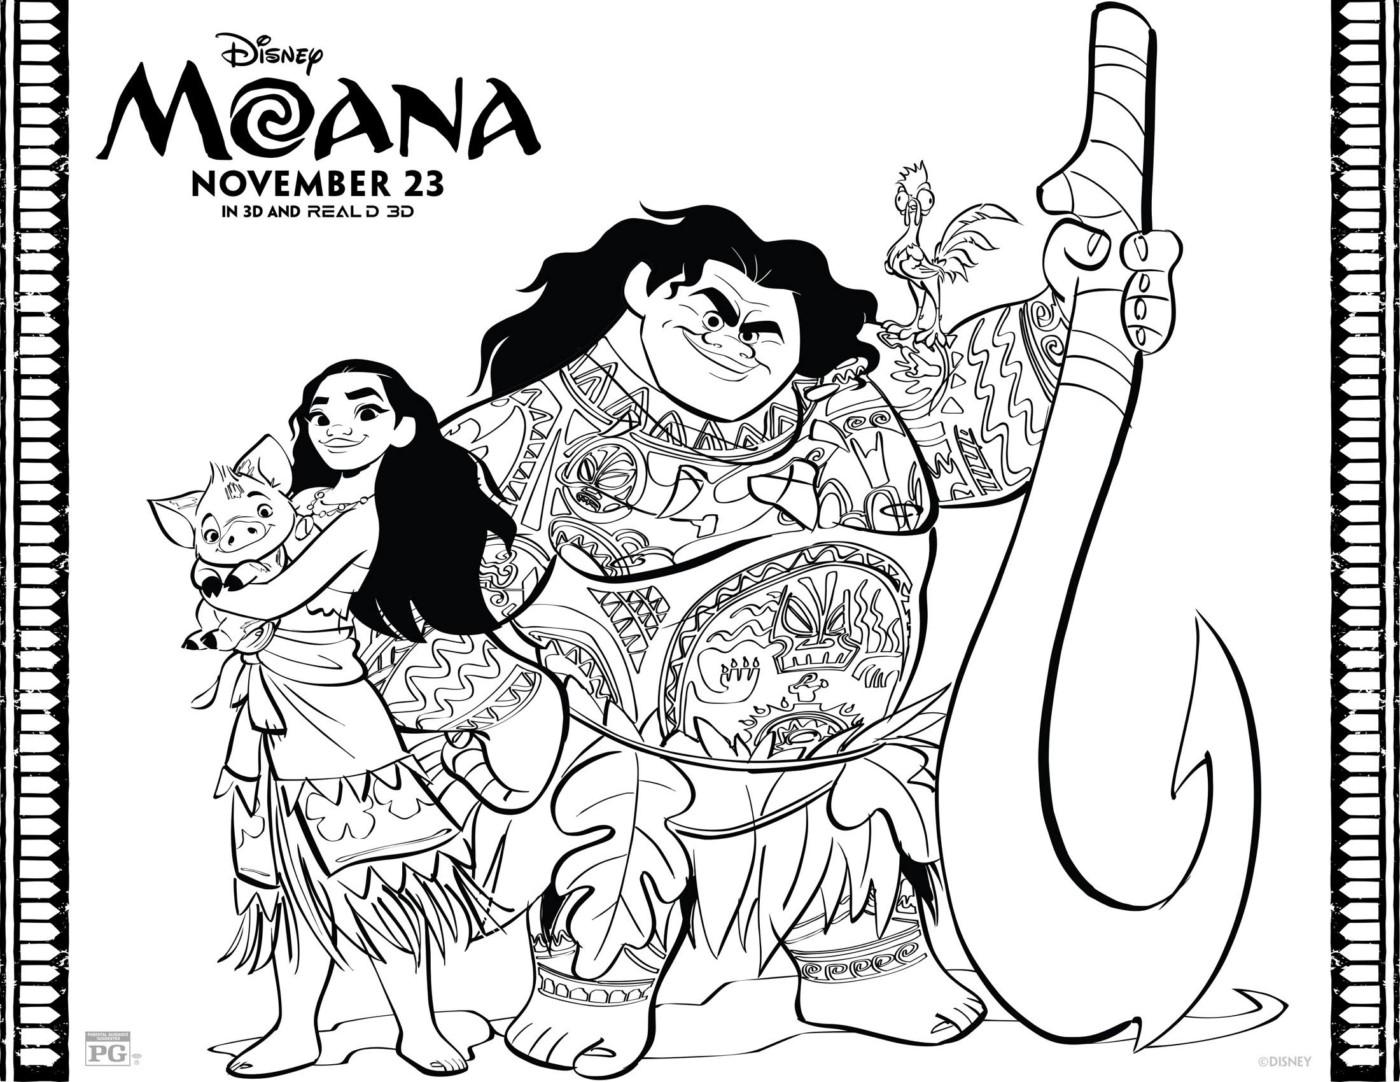 Раскраски к современному мультфильму Моана для детей  Раскраска принцесса Моана держит на руках поросенка и рядом стоит Мауи со своим оружием в виде крюка